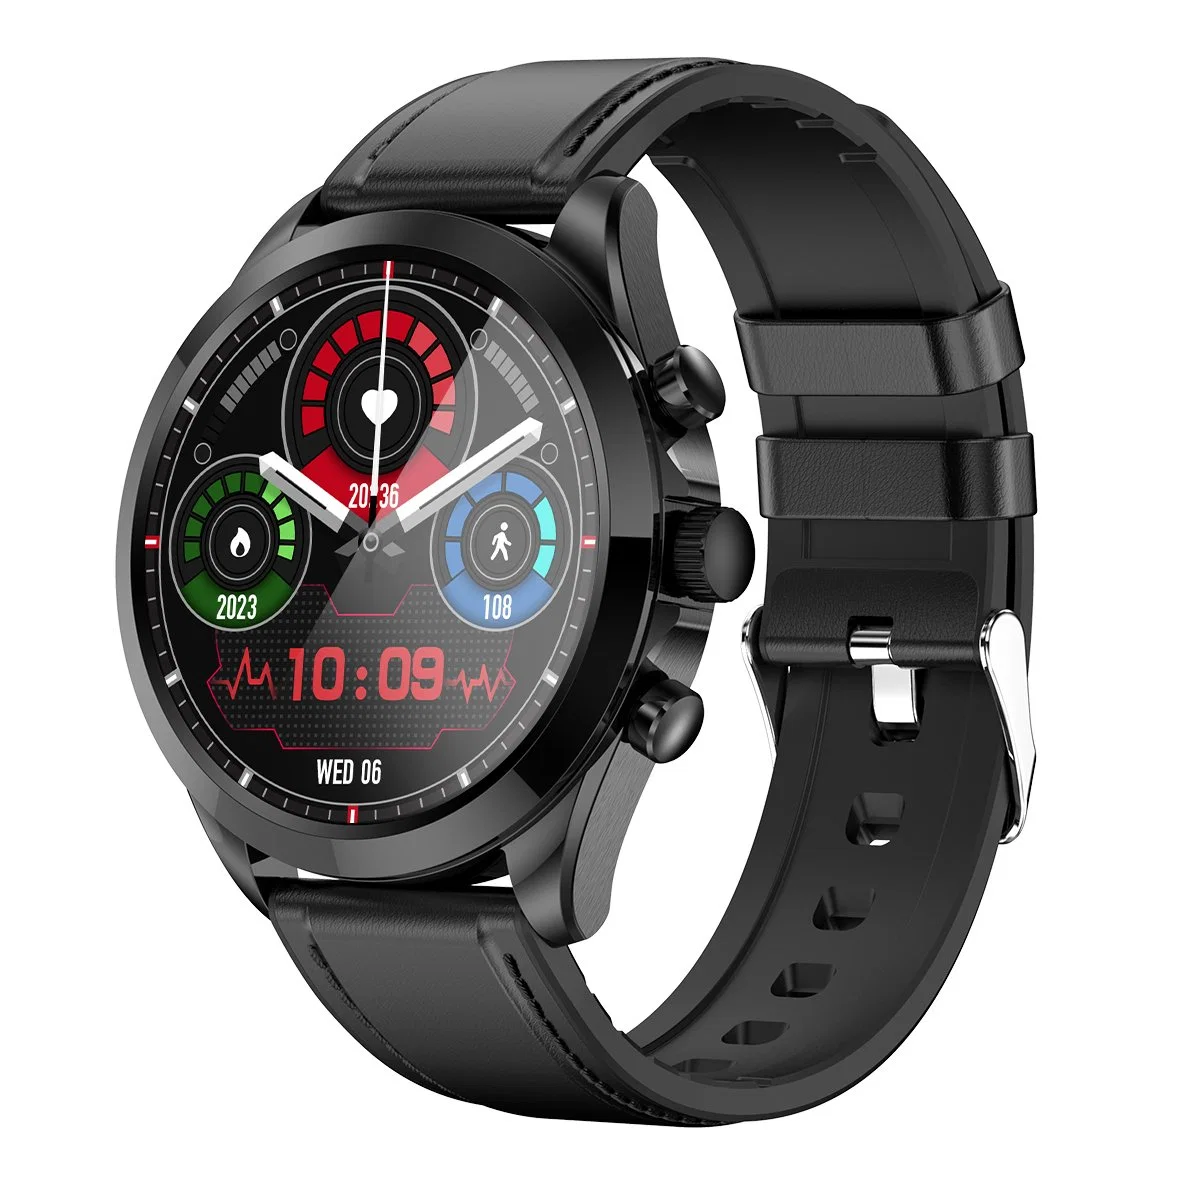 Et440 chamada Bluetooth Smart Watch ECG HRV monitorização da temperatura corporal Voice Assistant Fitness pulseira, correia de pele - Preto